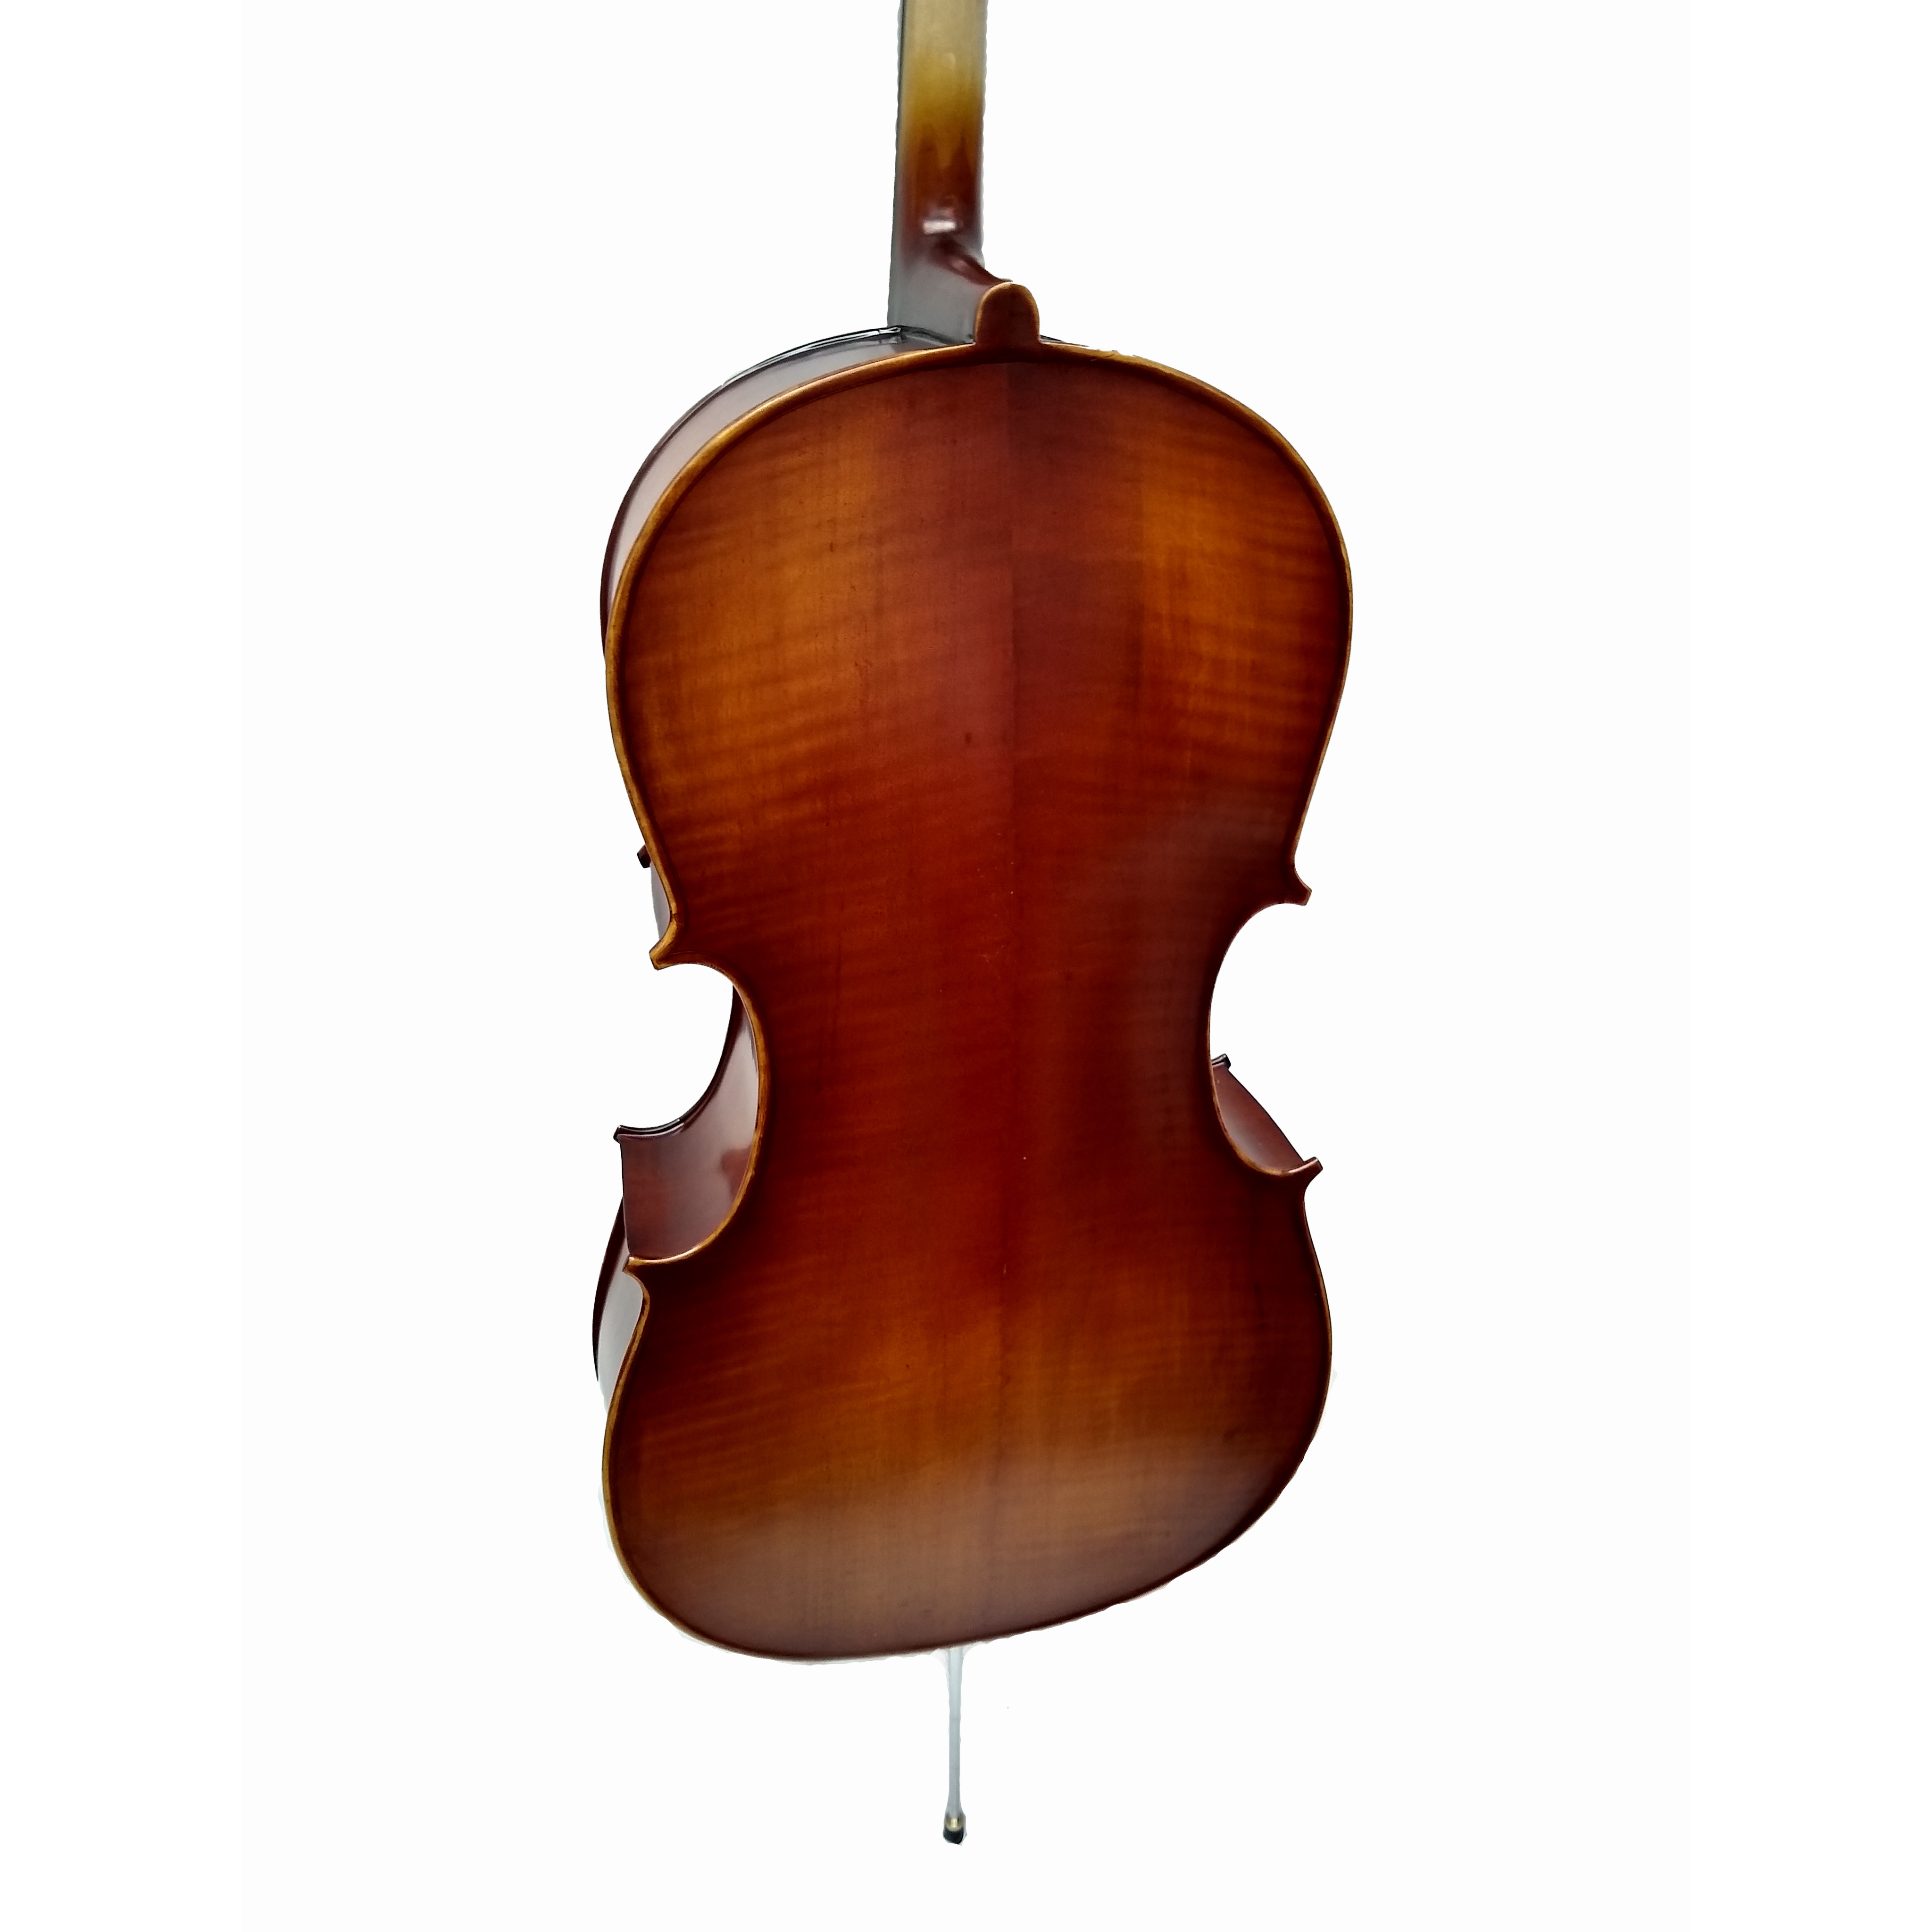 Vienna Strings Munich Cello 4/4